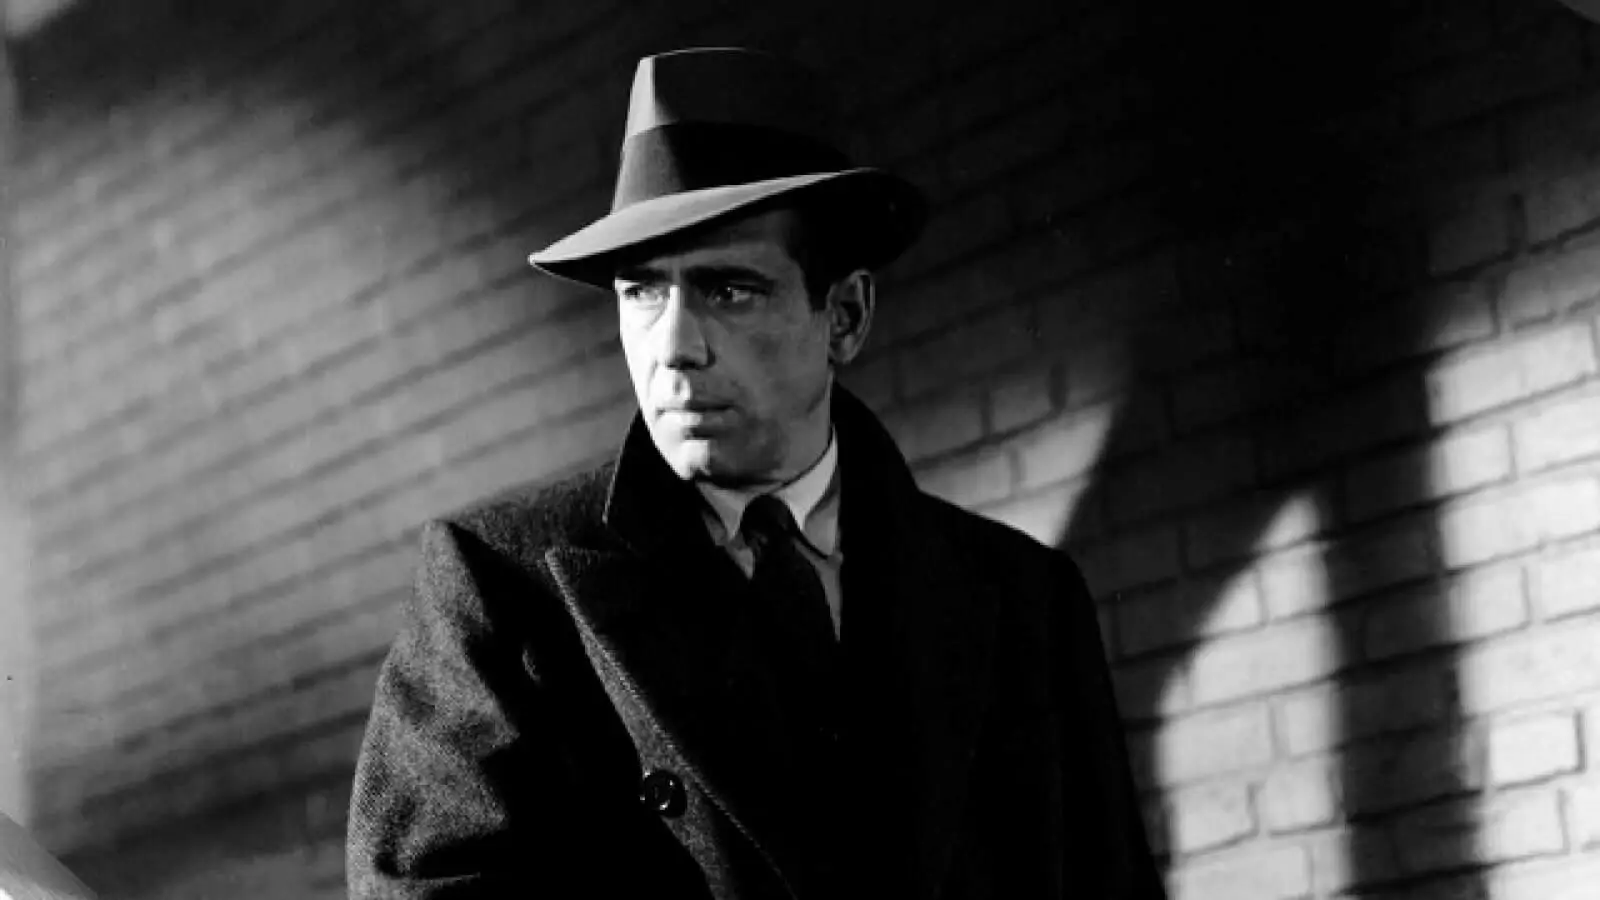 Chiaroscuro in Film - The Maltese Falcon